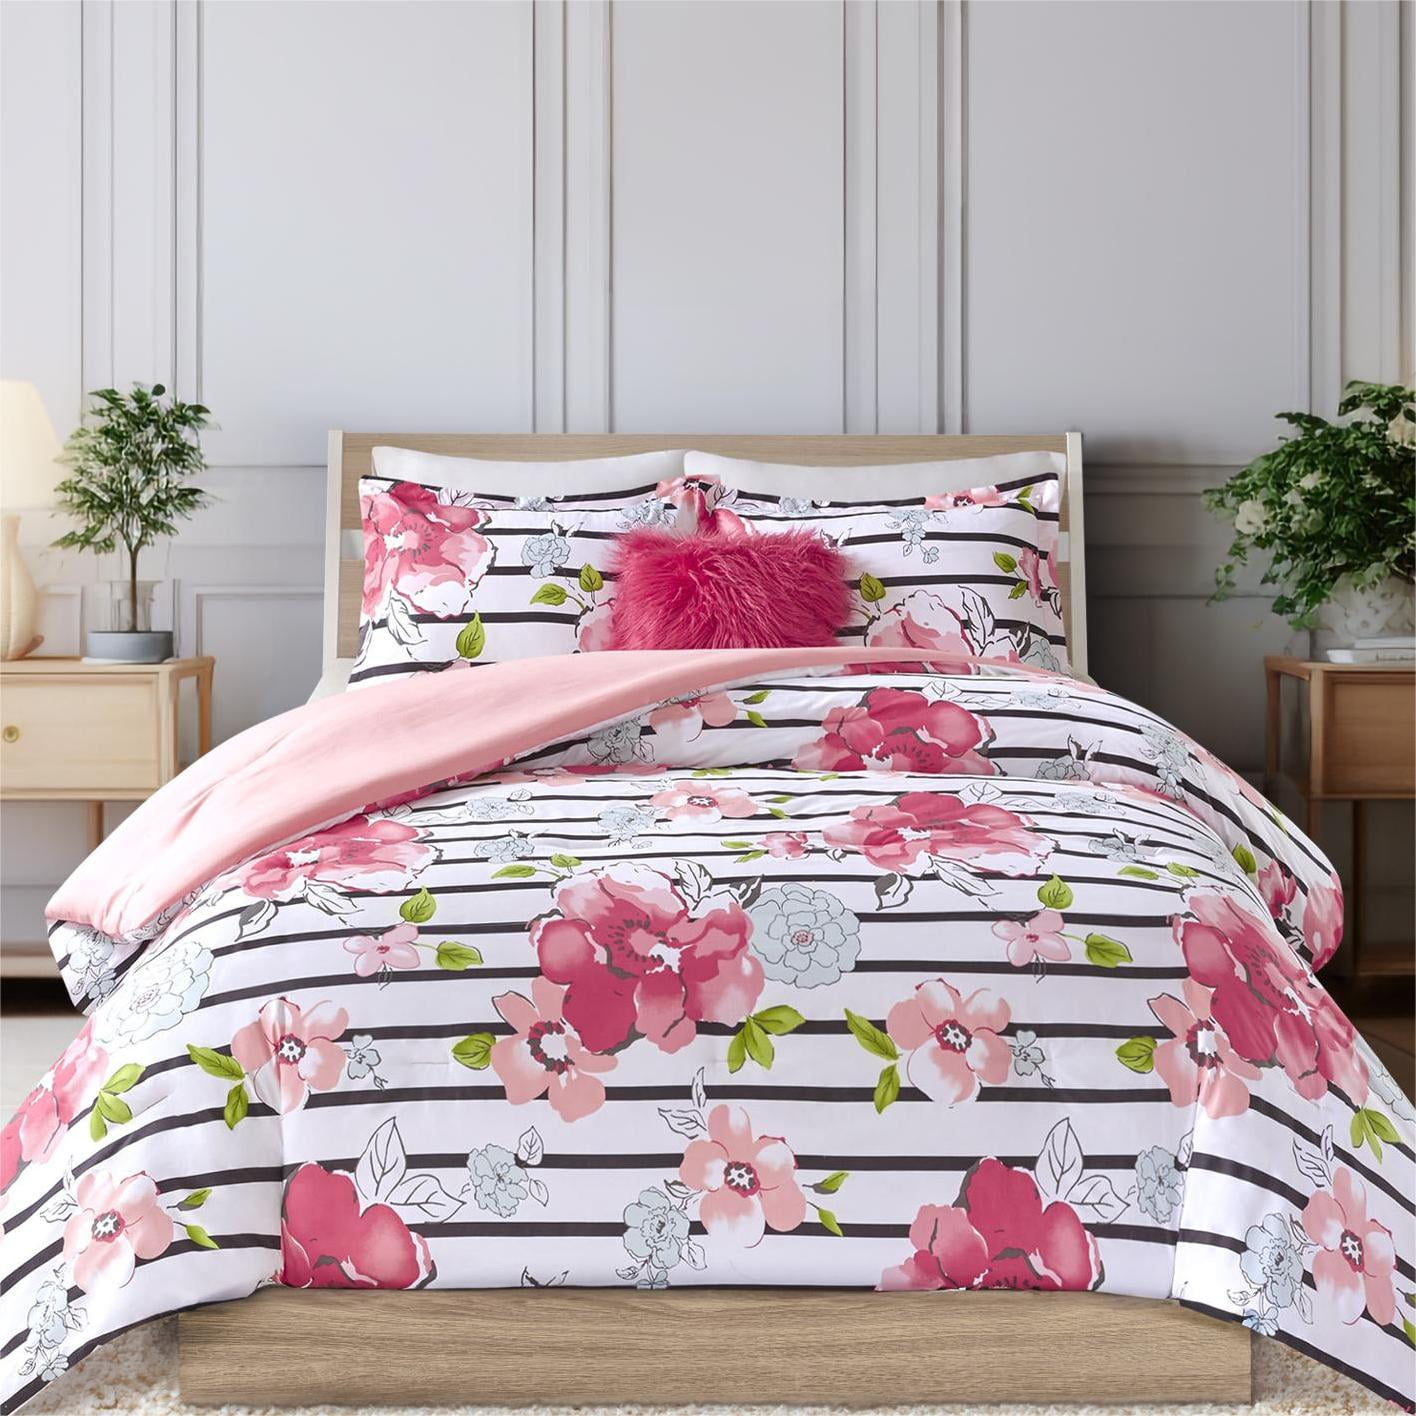 Floral Comforter Sets